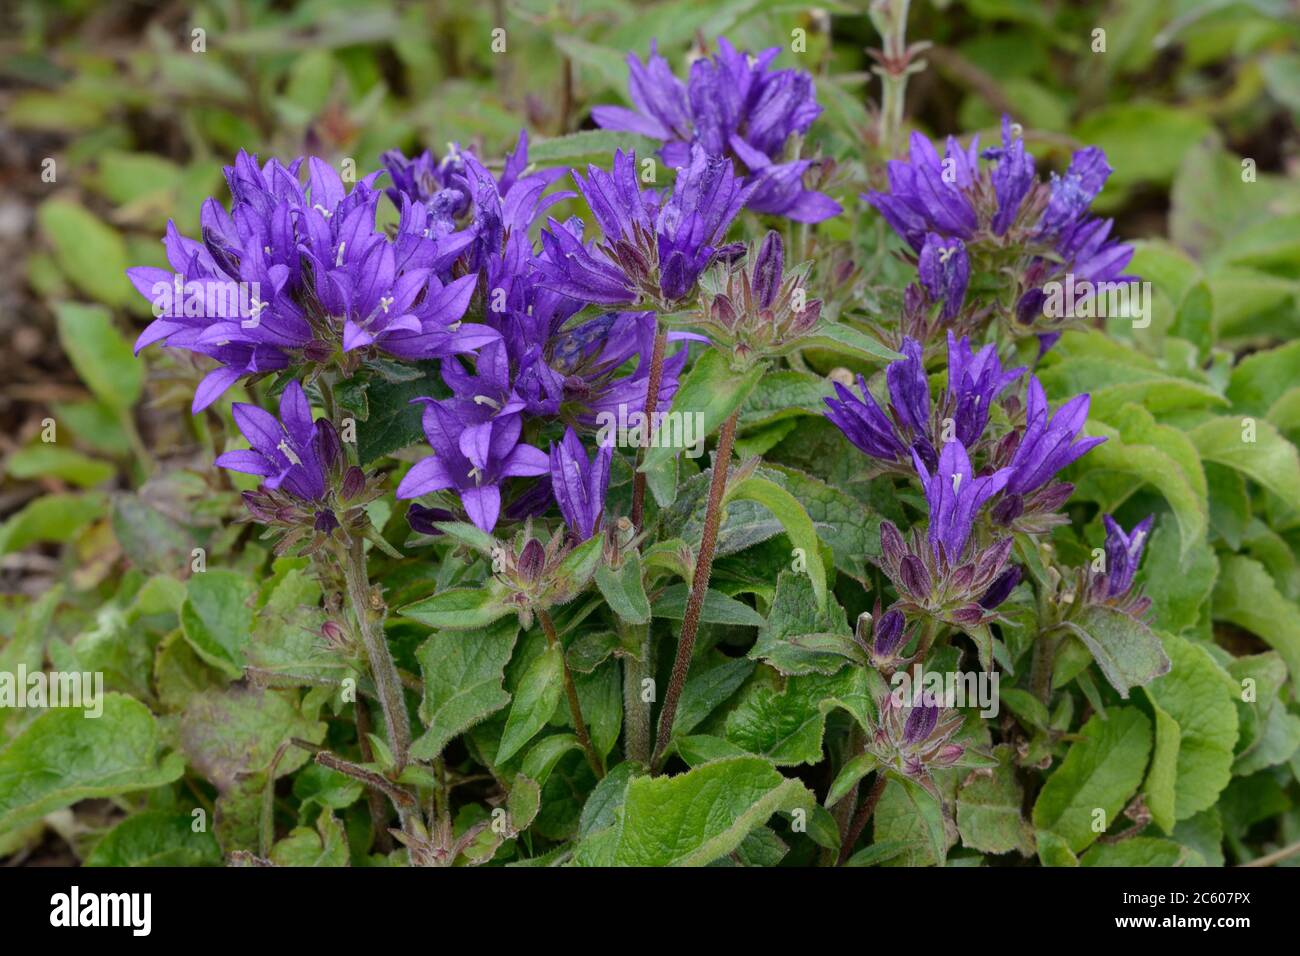 Campanula glomerata Superba i fiori di Bellflowers in cluster sono fitti grappoli di fiori viola viola a forma di campana Foto Stock